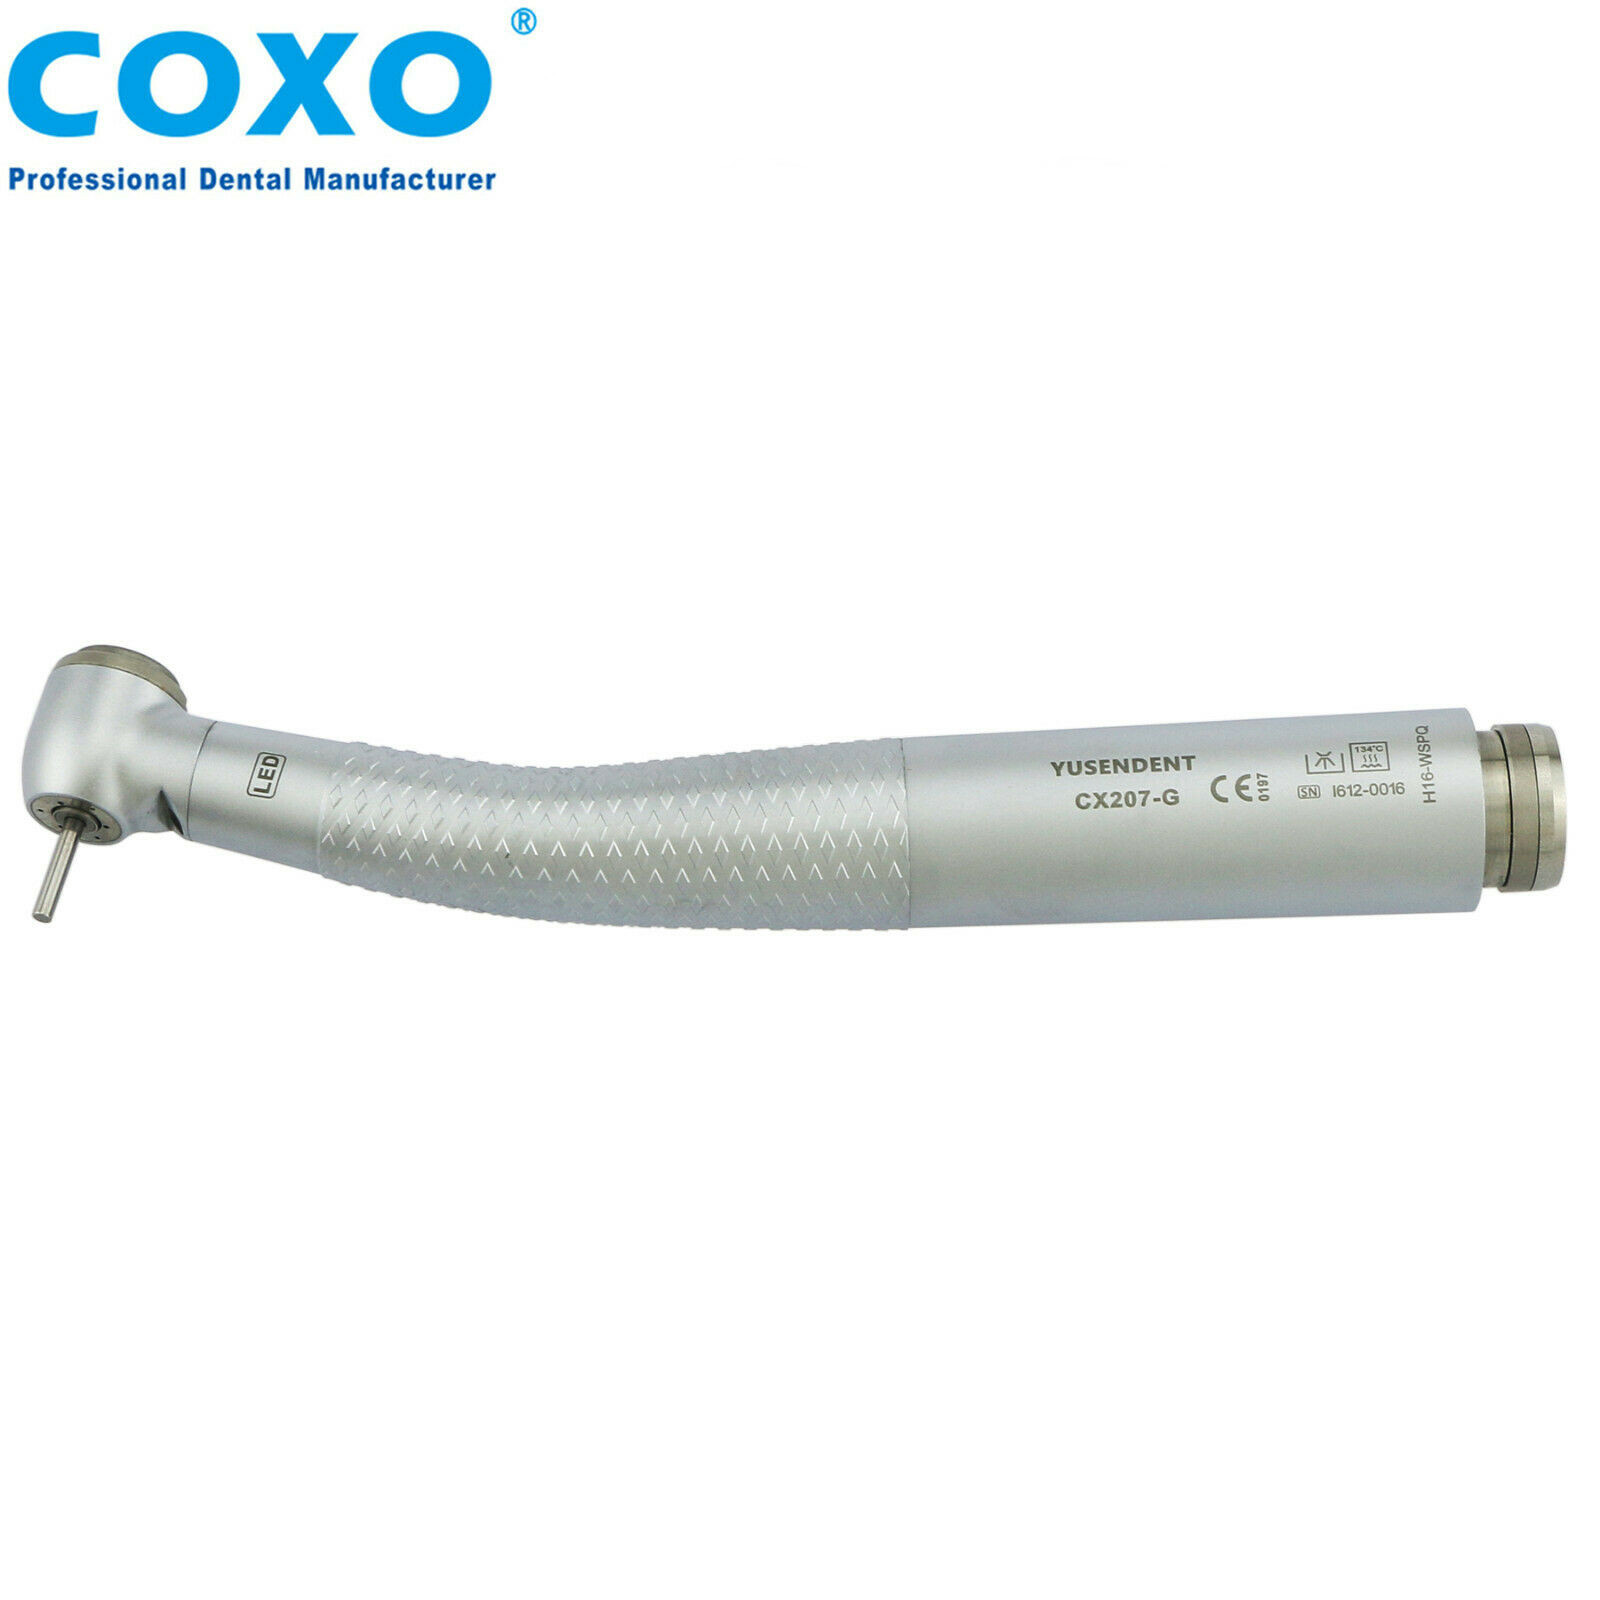 COXO®歯科用ライト付き高速タービンCX207-GW-SP（W&H Roto Quick®とコンパチブル、カップリング無し）